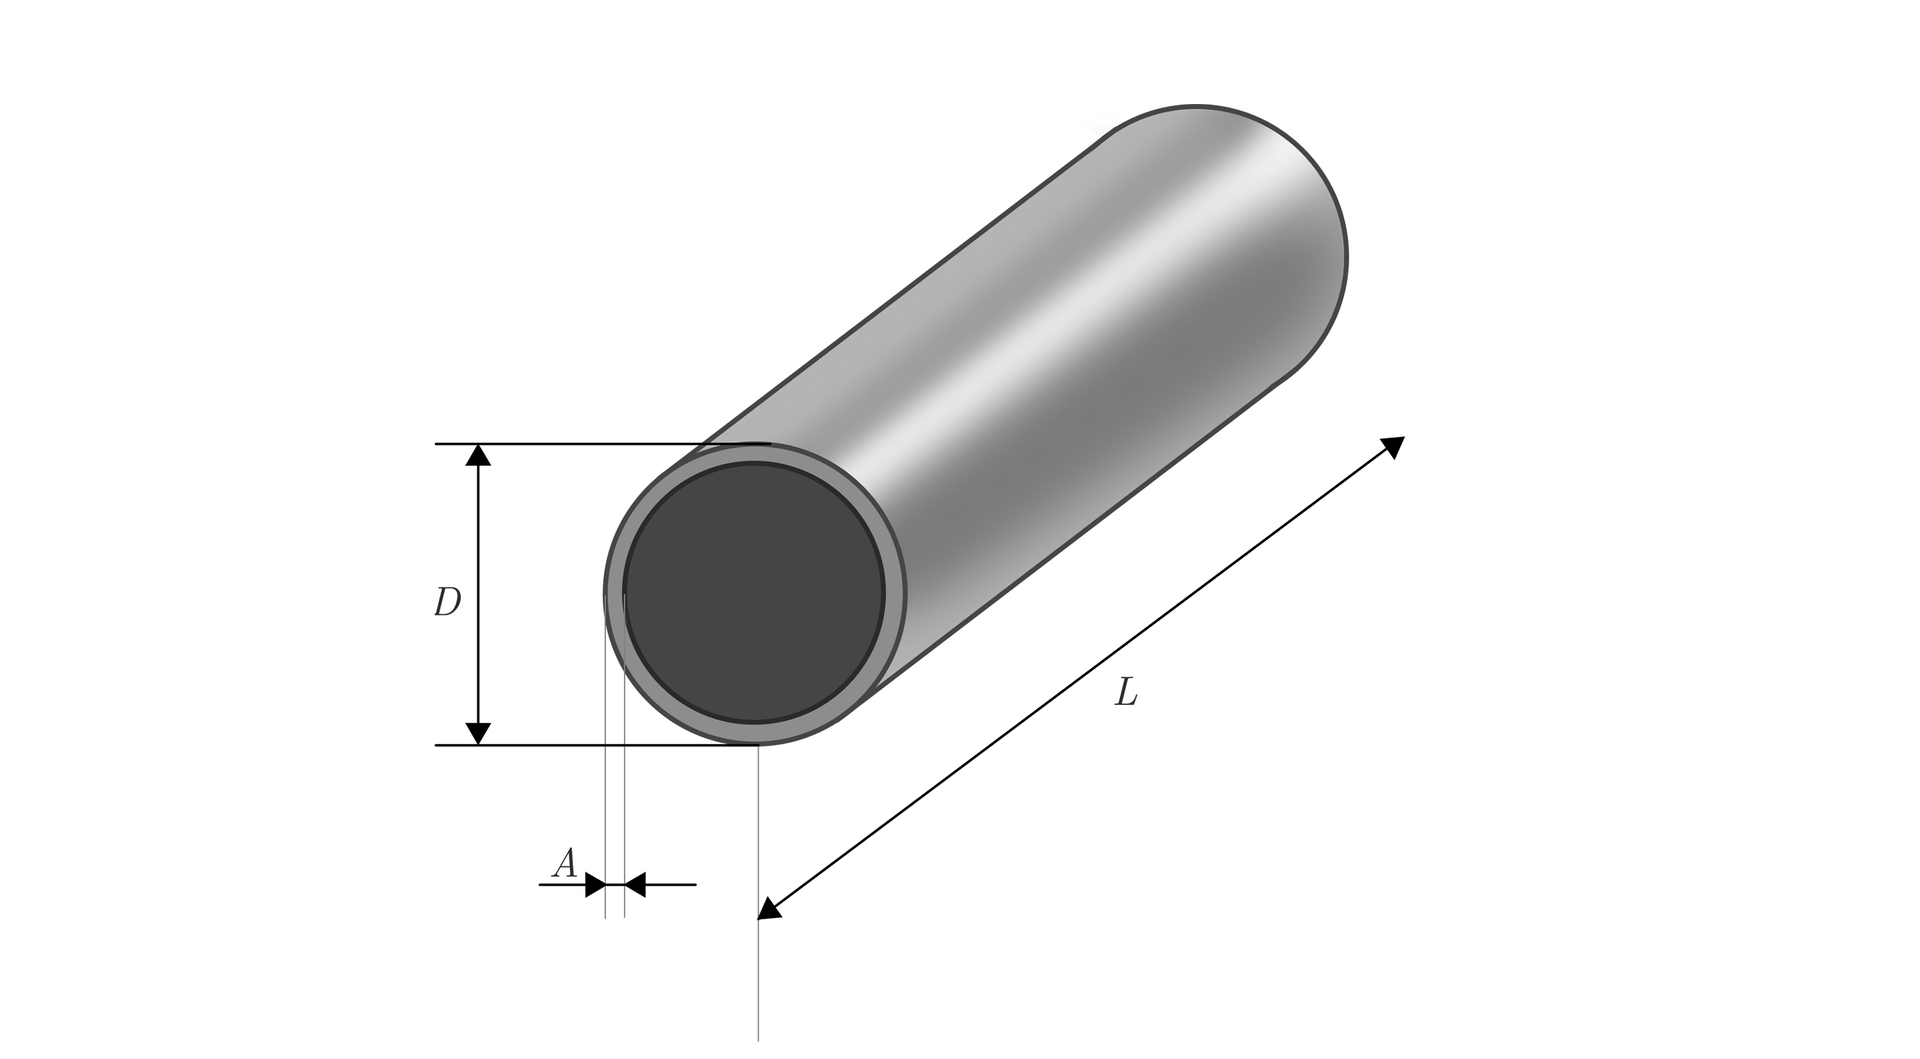  Ilustracja przedstawia metalową rurę z zaznaczonymi trzema wymiarami. Pierwszym wymiarem jest długość rury oznaczana przez L, drugim wymiarem jest średnica podstawy oznaczana  przez D. Ostatnim oznaczanym wymiarem jest grubość materiału z jakiego została wykonana rura, czyli szerokość pierścienia znajdującego się w podstawie bryły. Wymiar ten oznaczono przez A. 